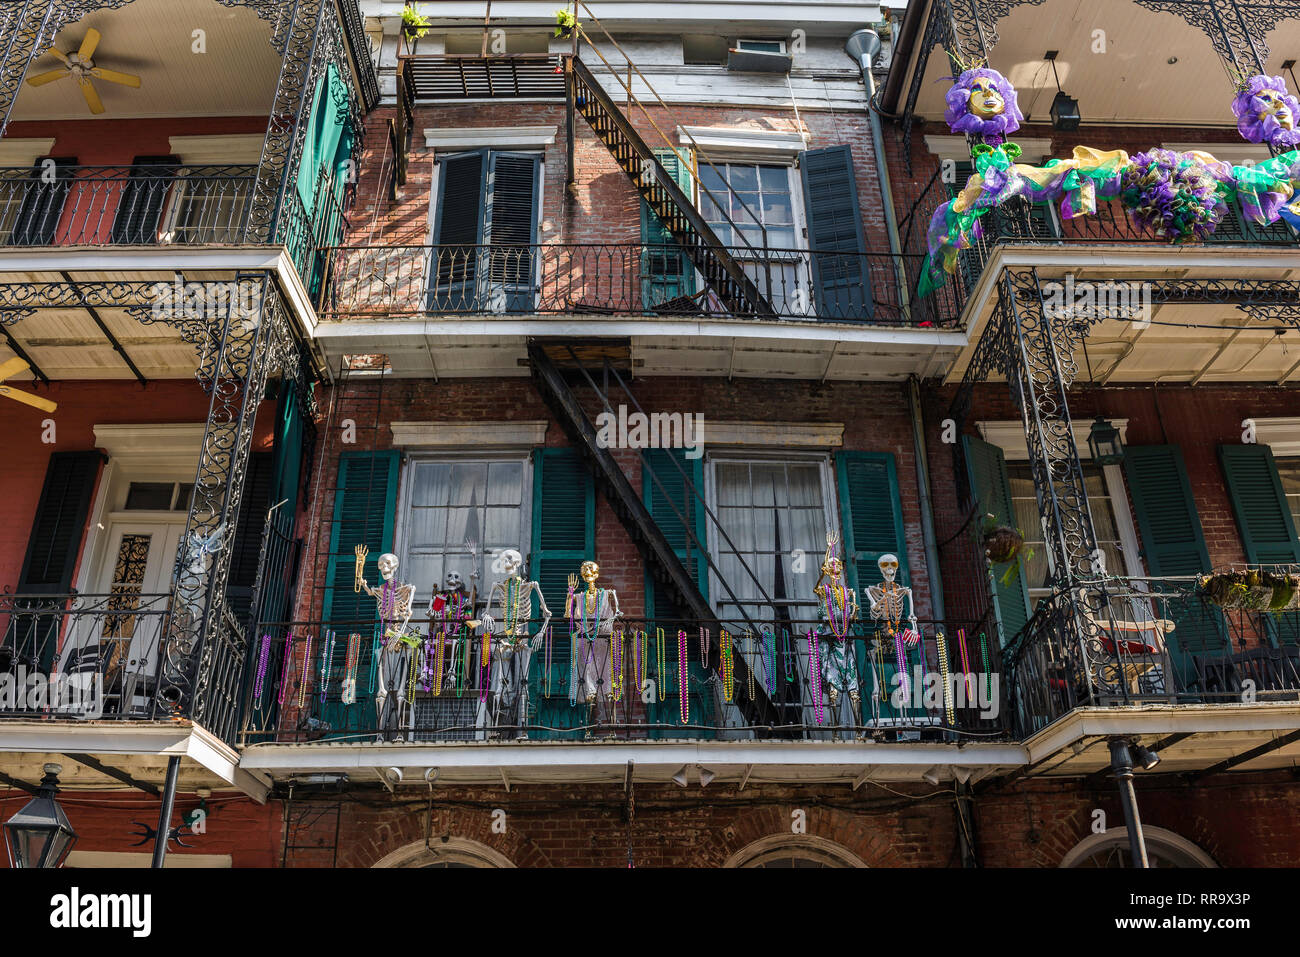 Le Mardi Gras de la Nouvelle Orléans, vue de squelettes et de perles colorées (Jette) décorer un balcon durant Mardi Gras dans le quartier français, la Nouvelle Orléans, USA Banque D'Images